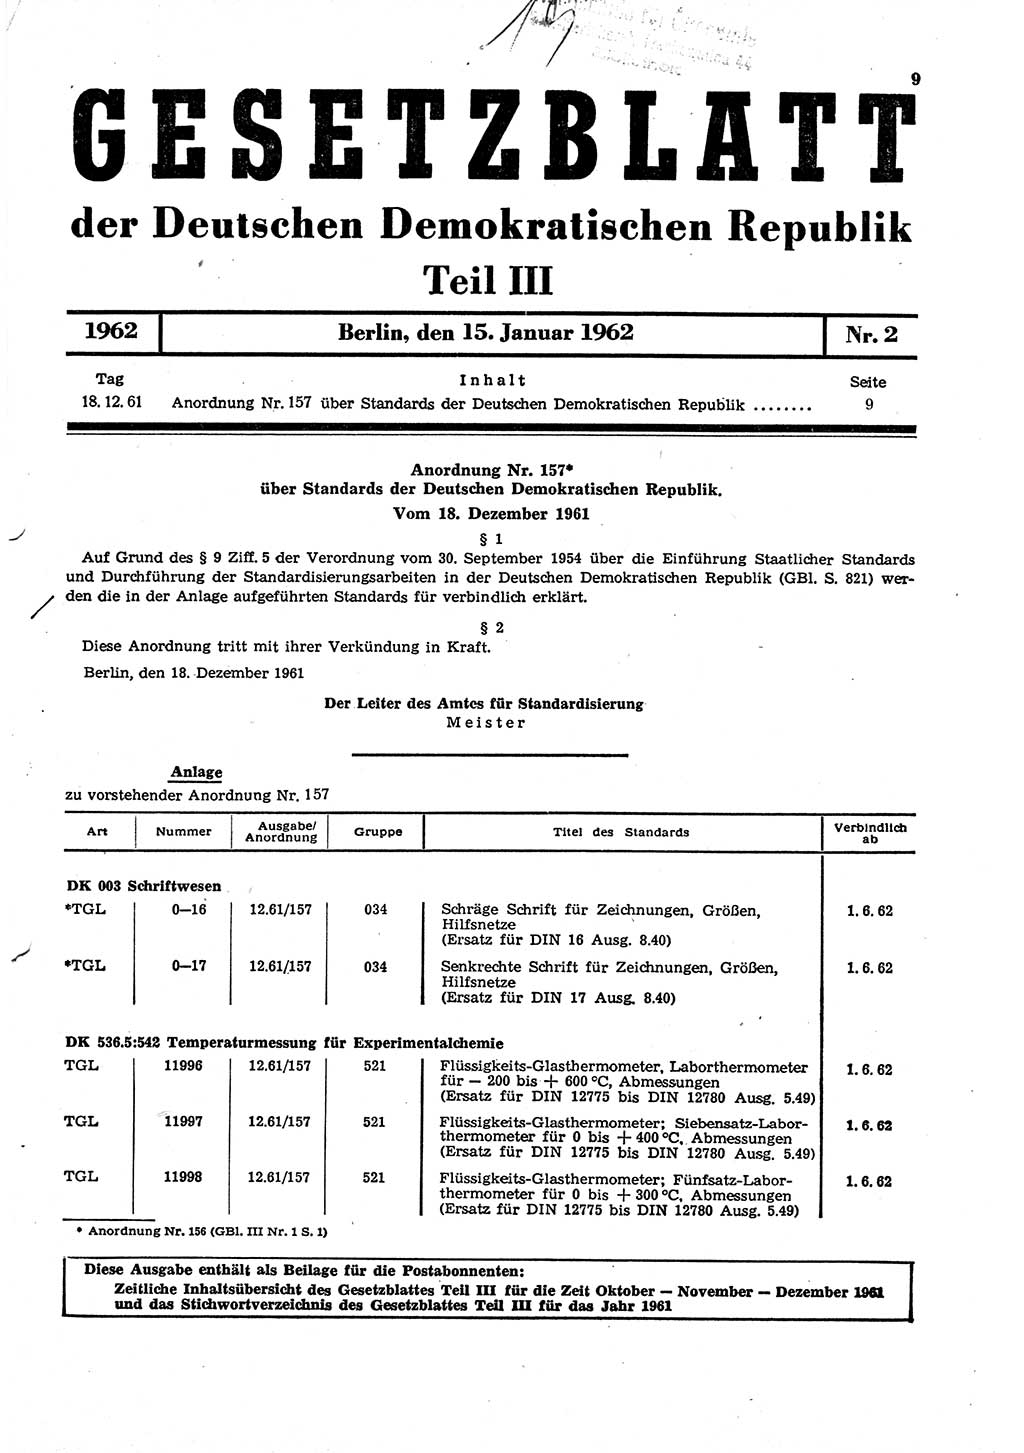 Gesetzblatt (GBl.) der Deutschen Demokratischen Republik (DDR) Teil ⅠⅠⅠ 1962, Seite 9 (GBl. DDR ⅠⅠⅠ 1962, S. 9)